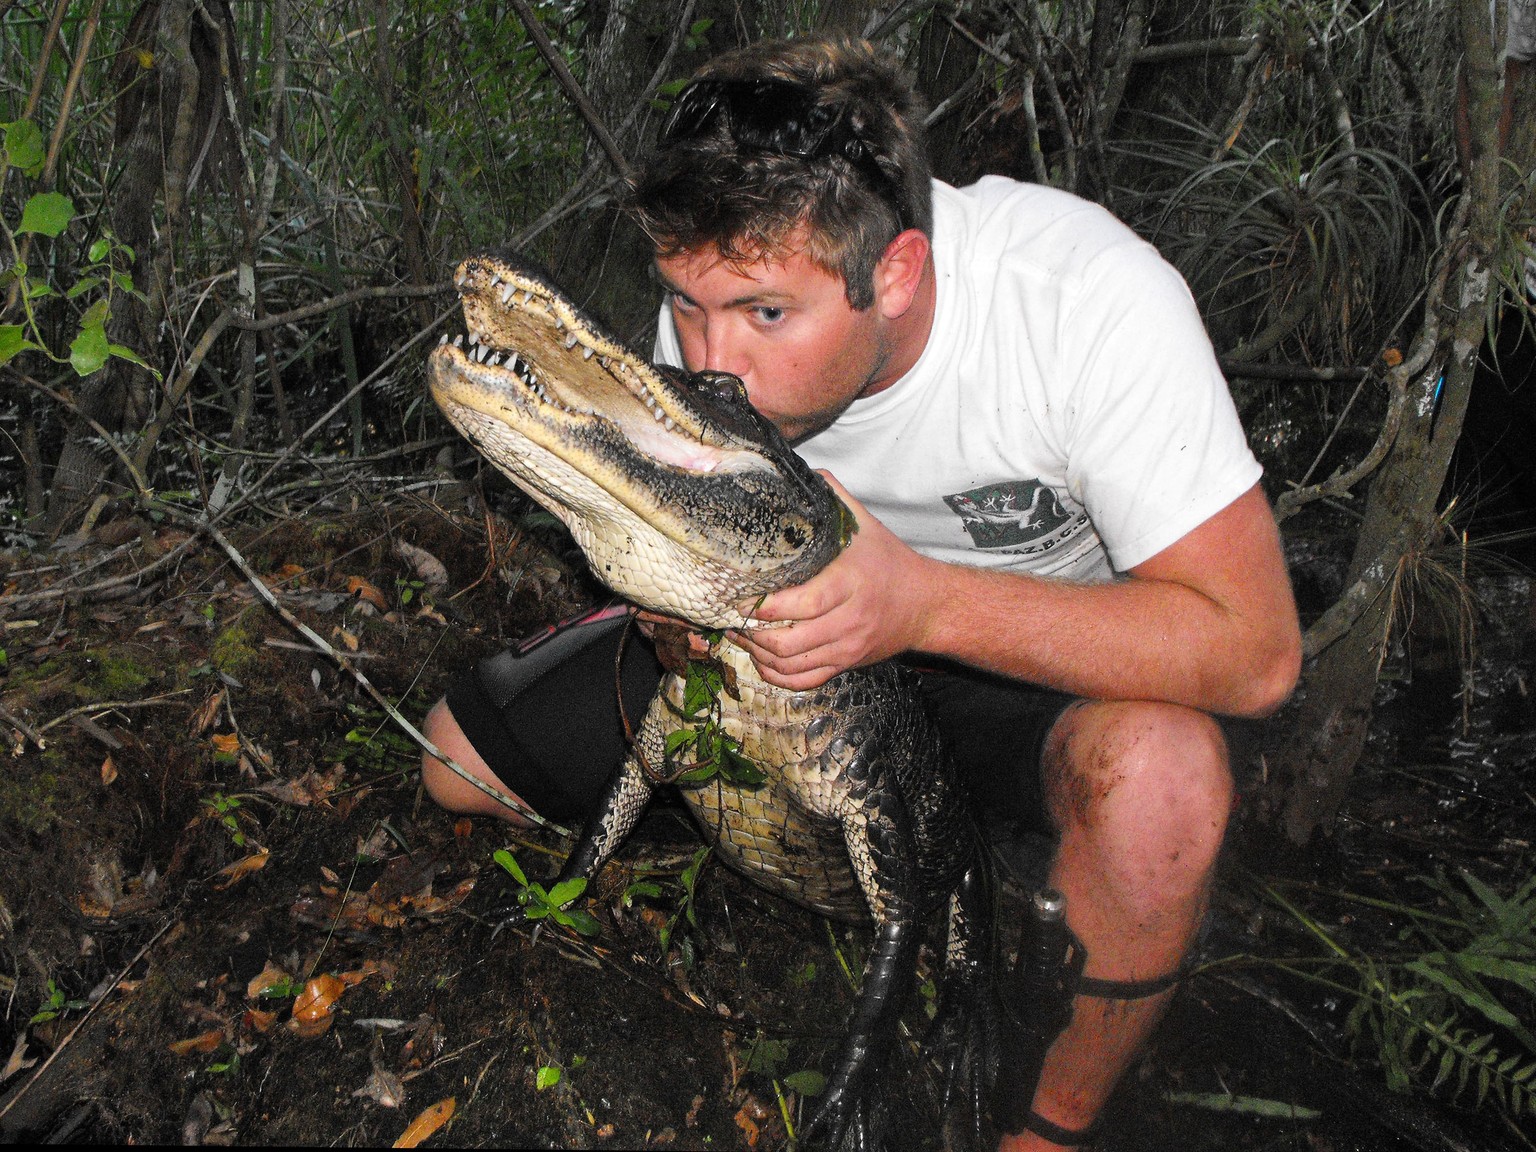 Forrest Galante küsst einen Alligator. 